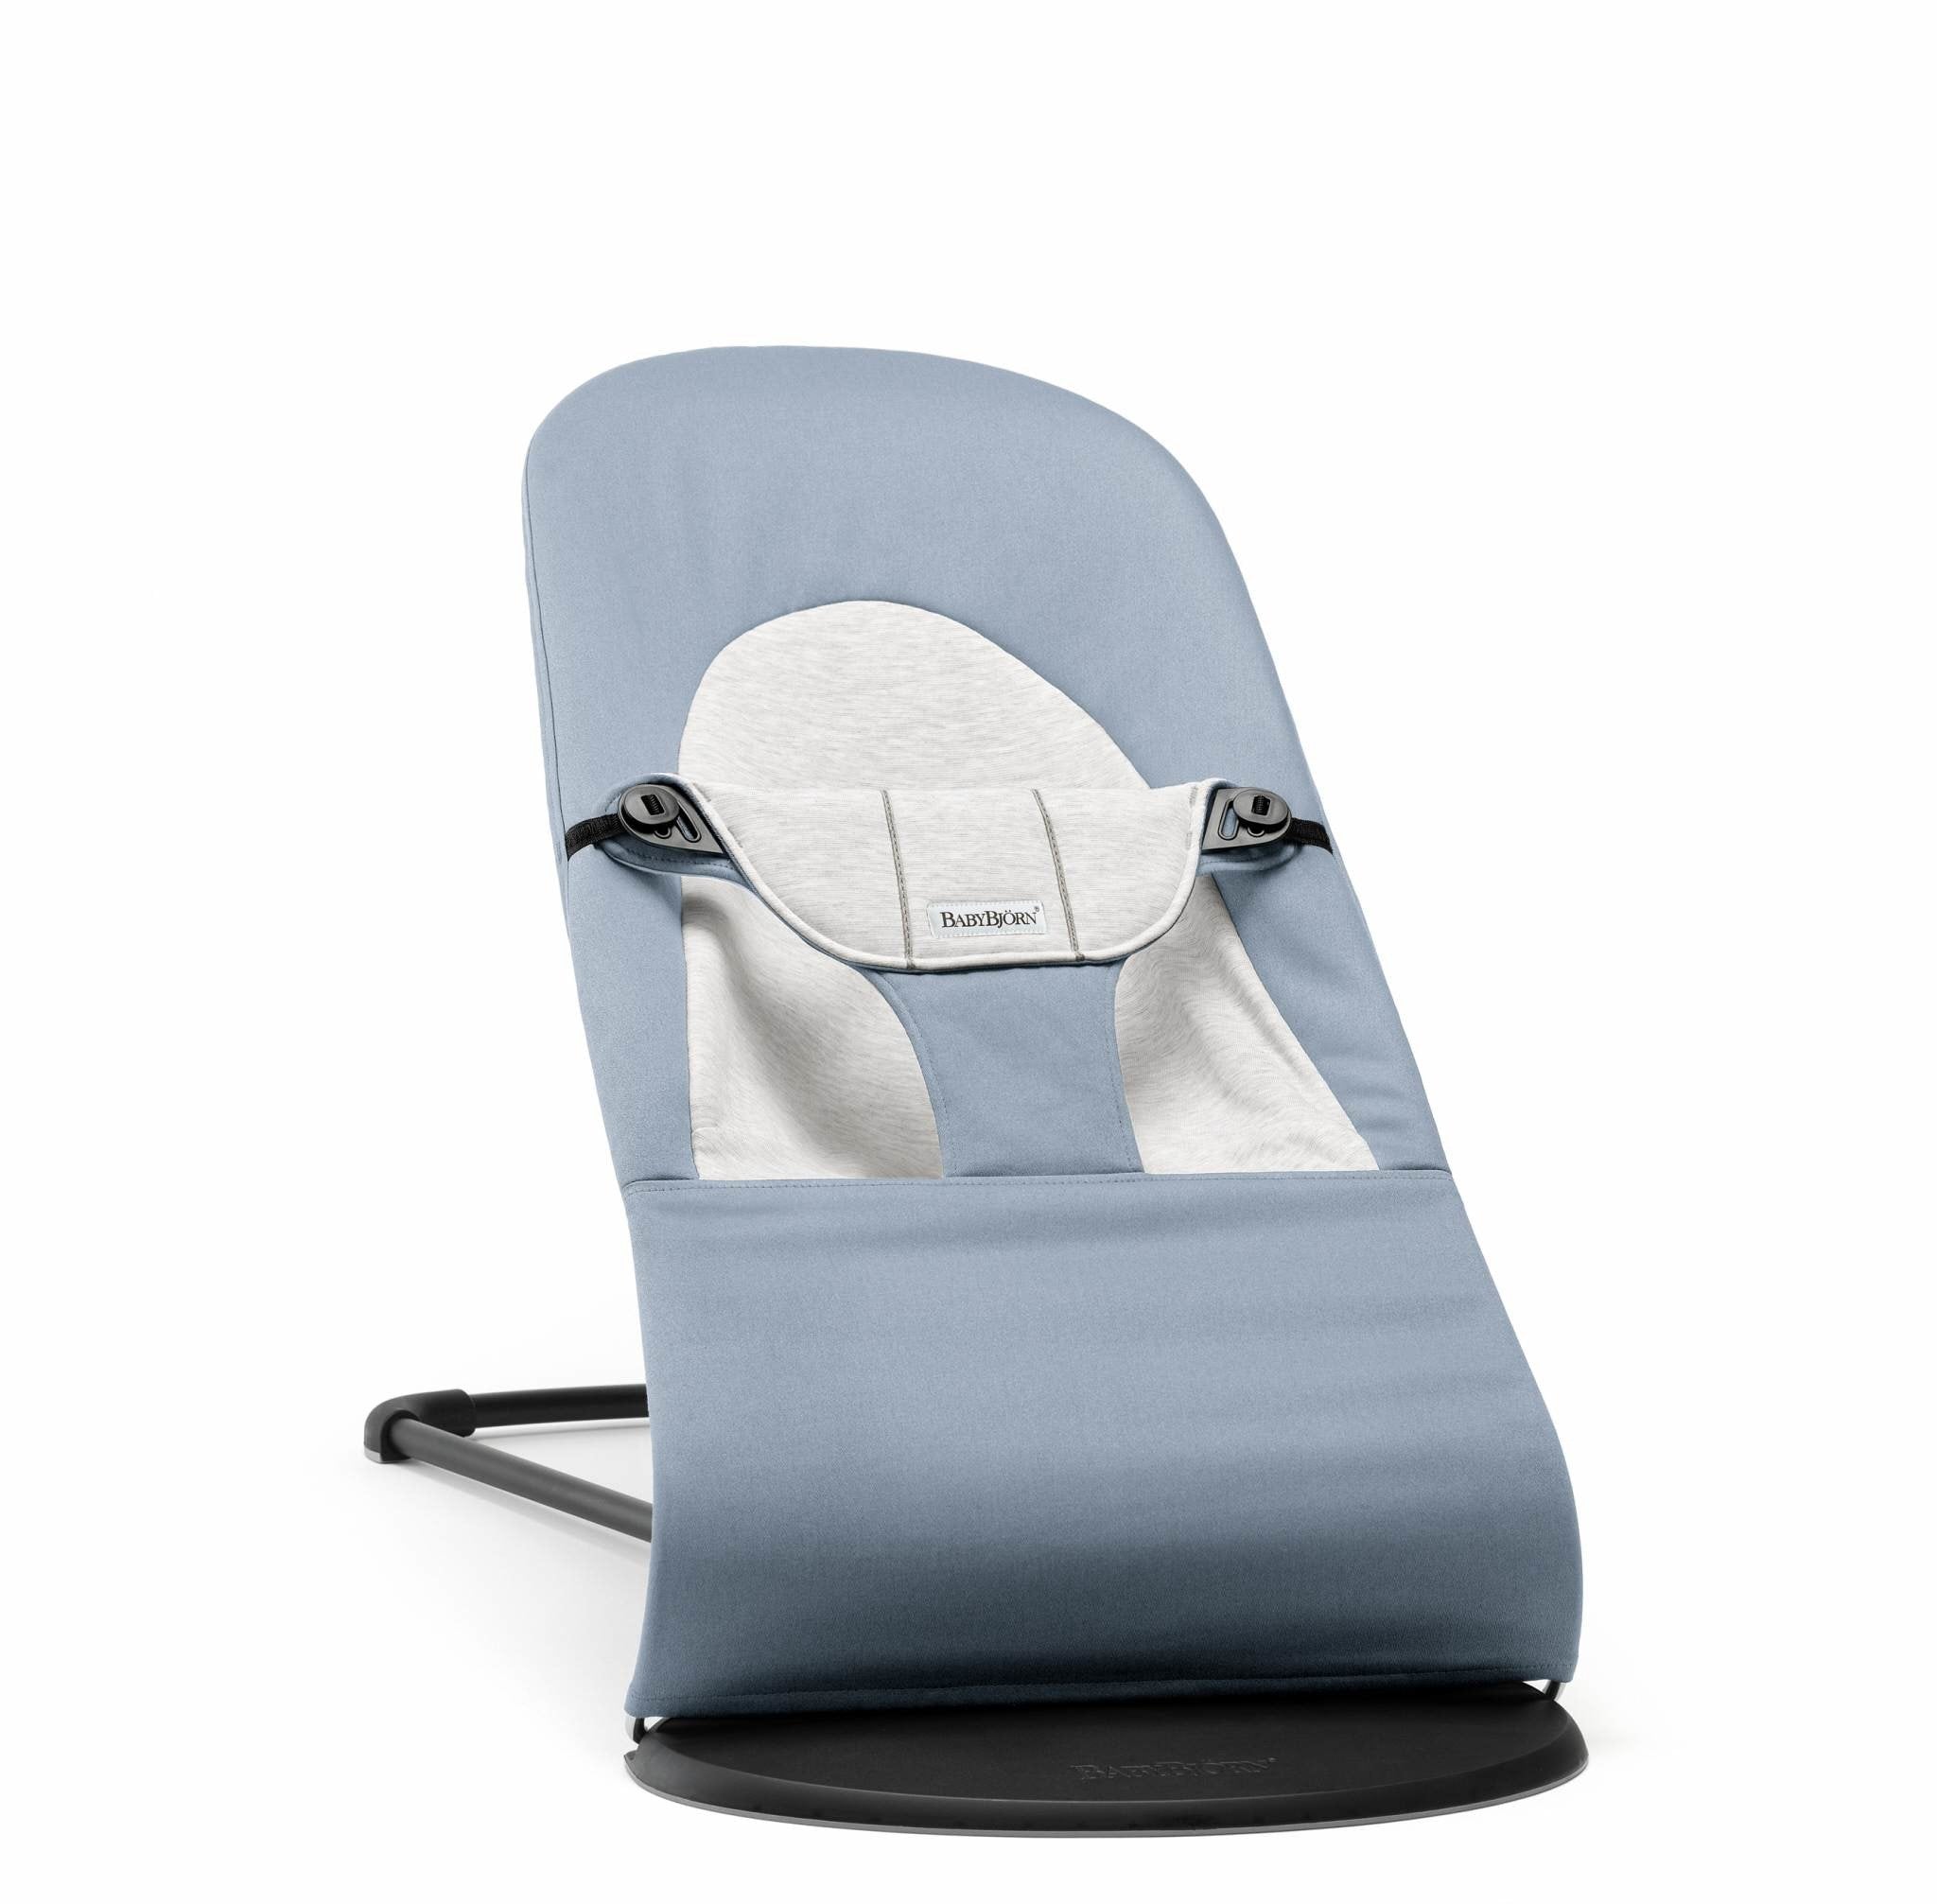 Babybjorn - Balance Soft Woven/Jersey deckchair - blue/gray